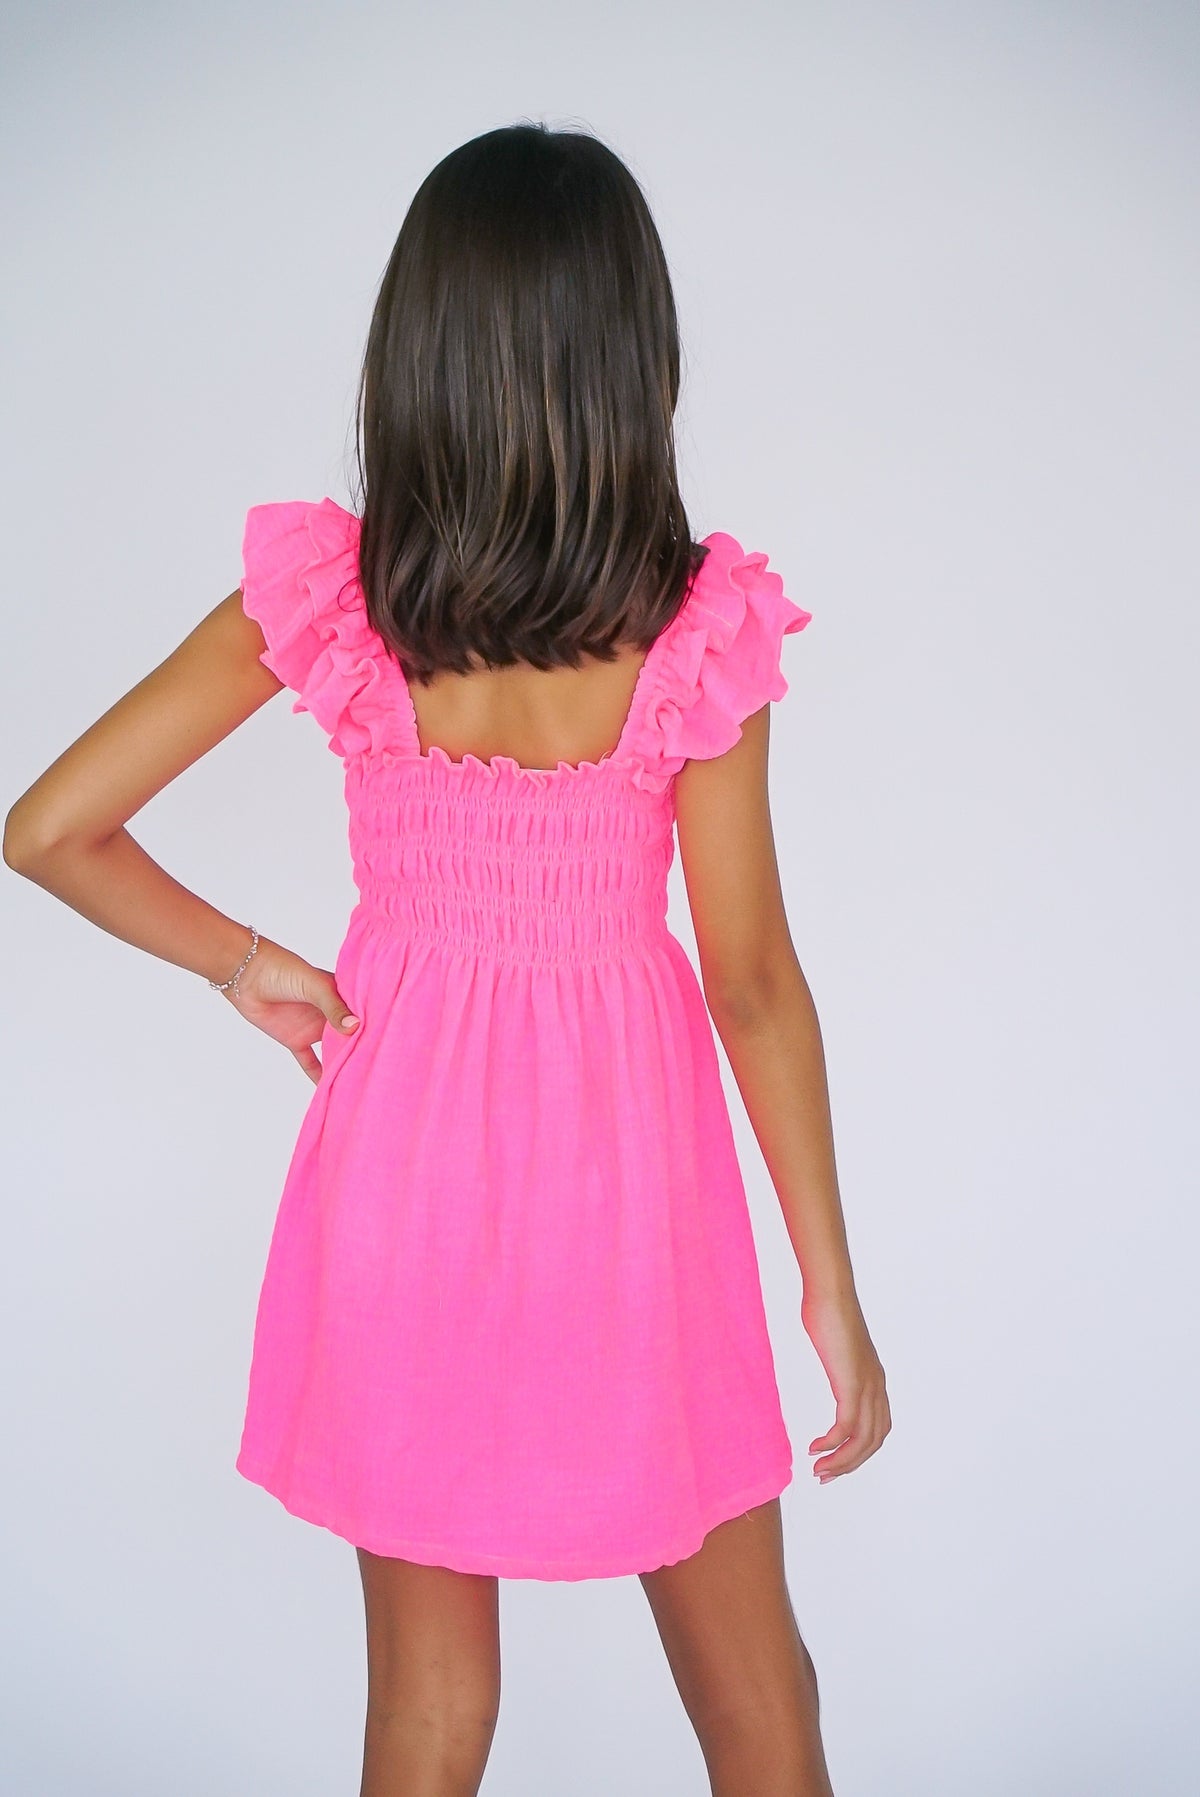 Flowers By Zoe - Girls - Neon Pink Smocked Flutter Sleeve Dress